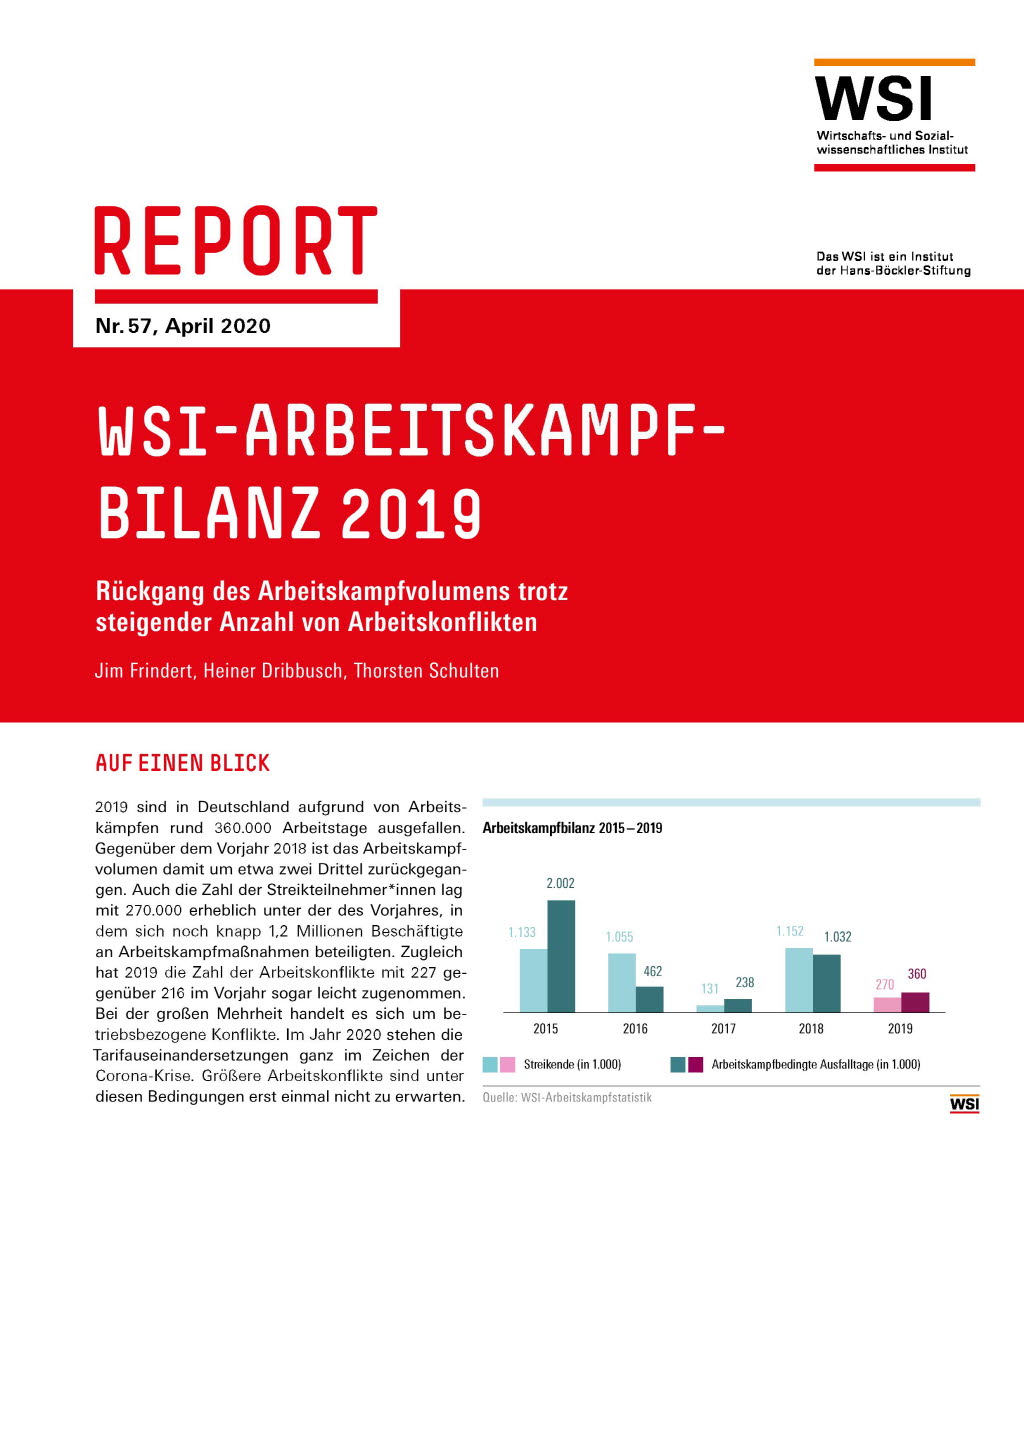 WSI-Arbeitskampfbilanz 2019